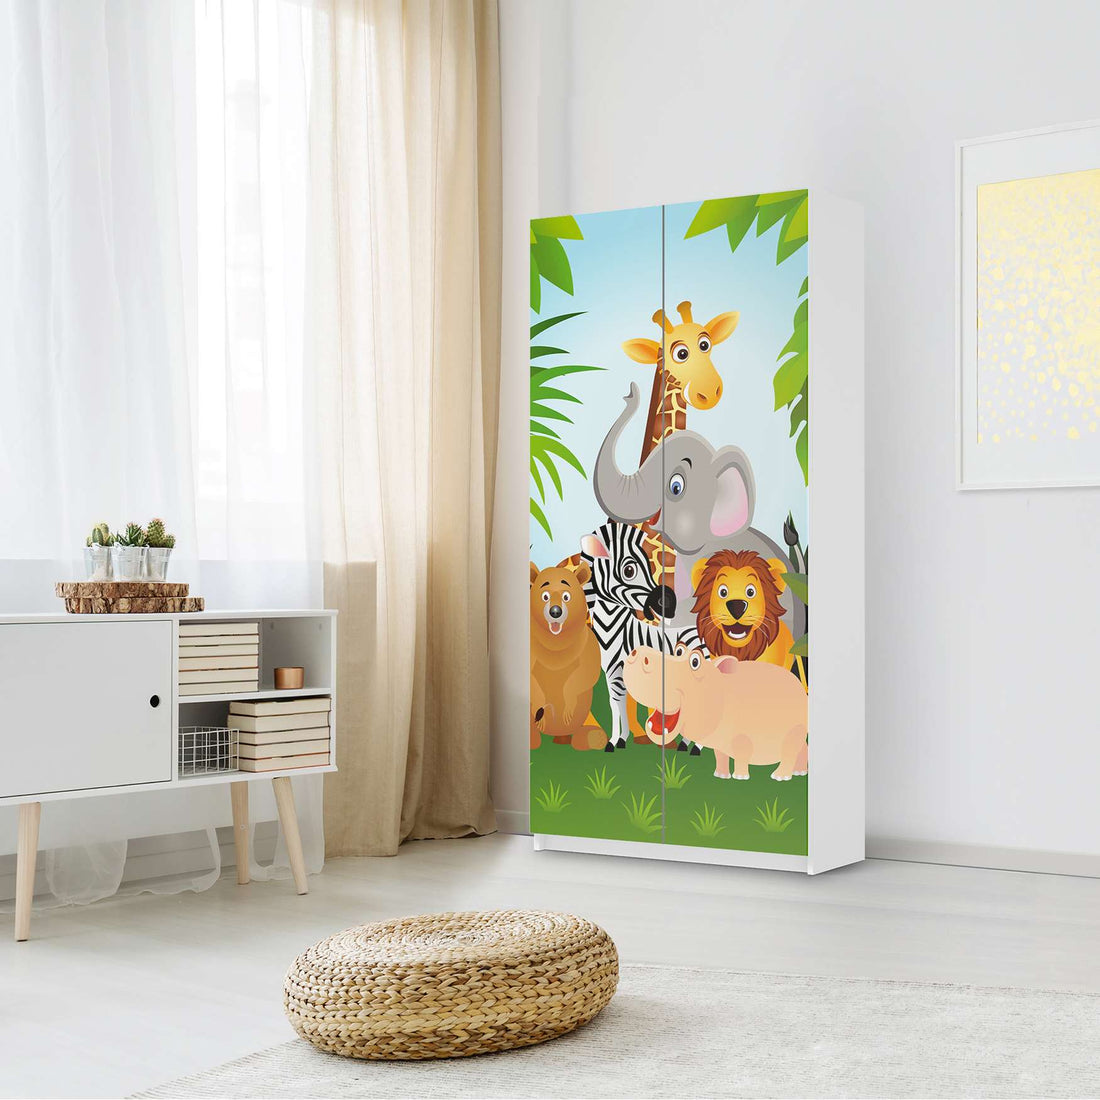 Klebefolie für Möbel Wild Animals - IKEA Pax Schrank 201 cm Höhe - 2 Türen - Kinderzimmer